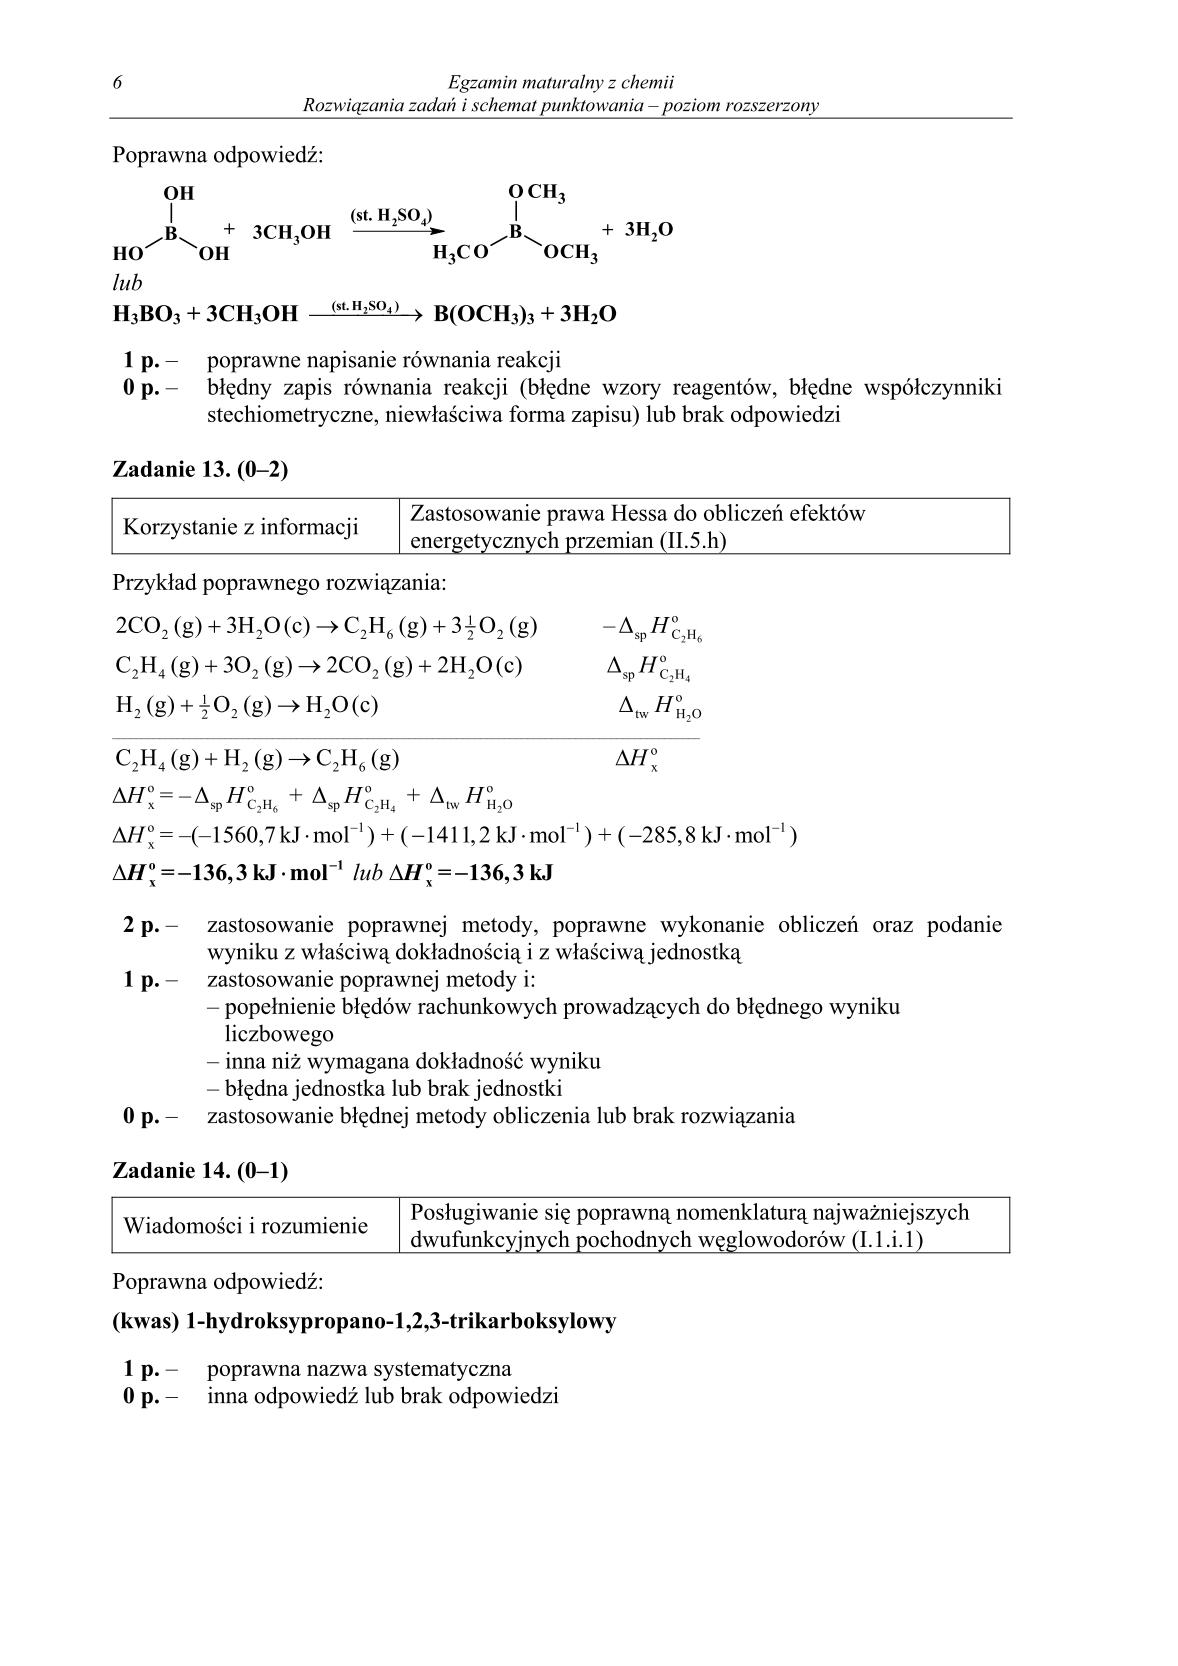 odpowiedzi-chemia-poziom-rozszerzony-matura-2014-str.6